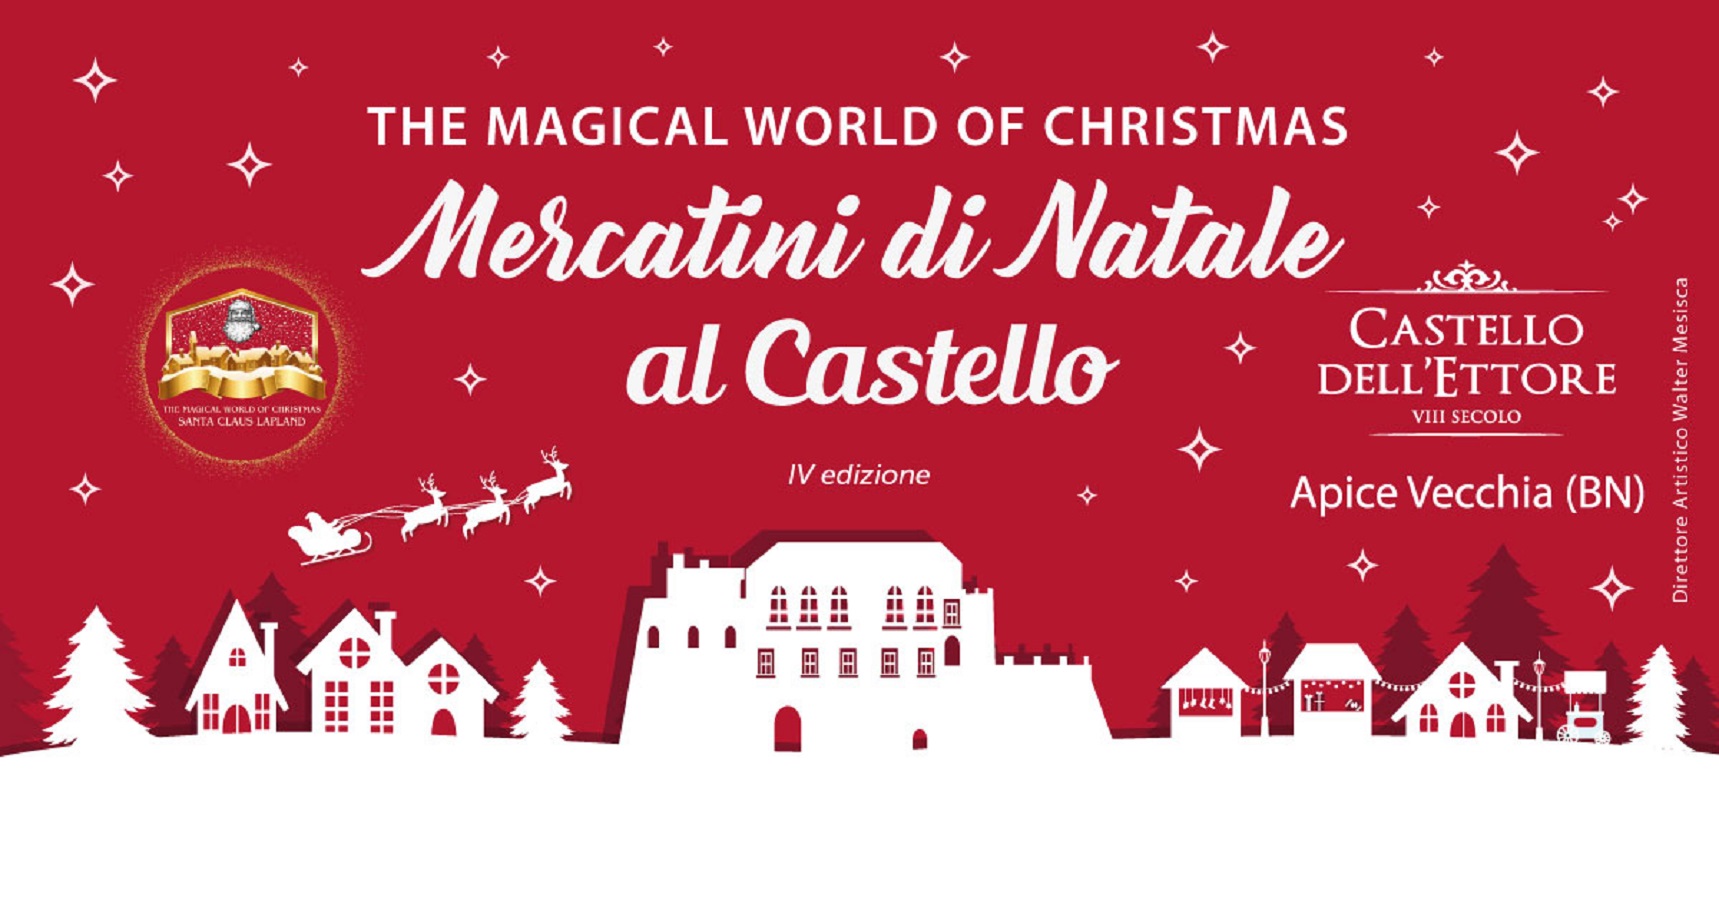 Mercatini di Natale al Castello dell Ettore 2022 Apice Vecchia Benevento.jpg